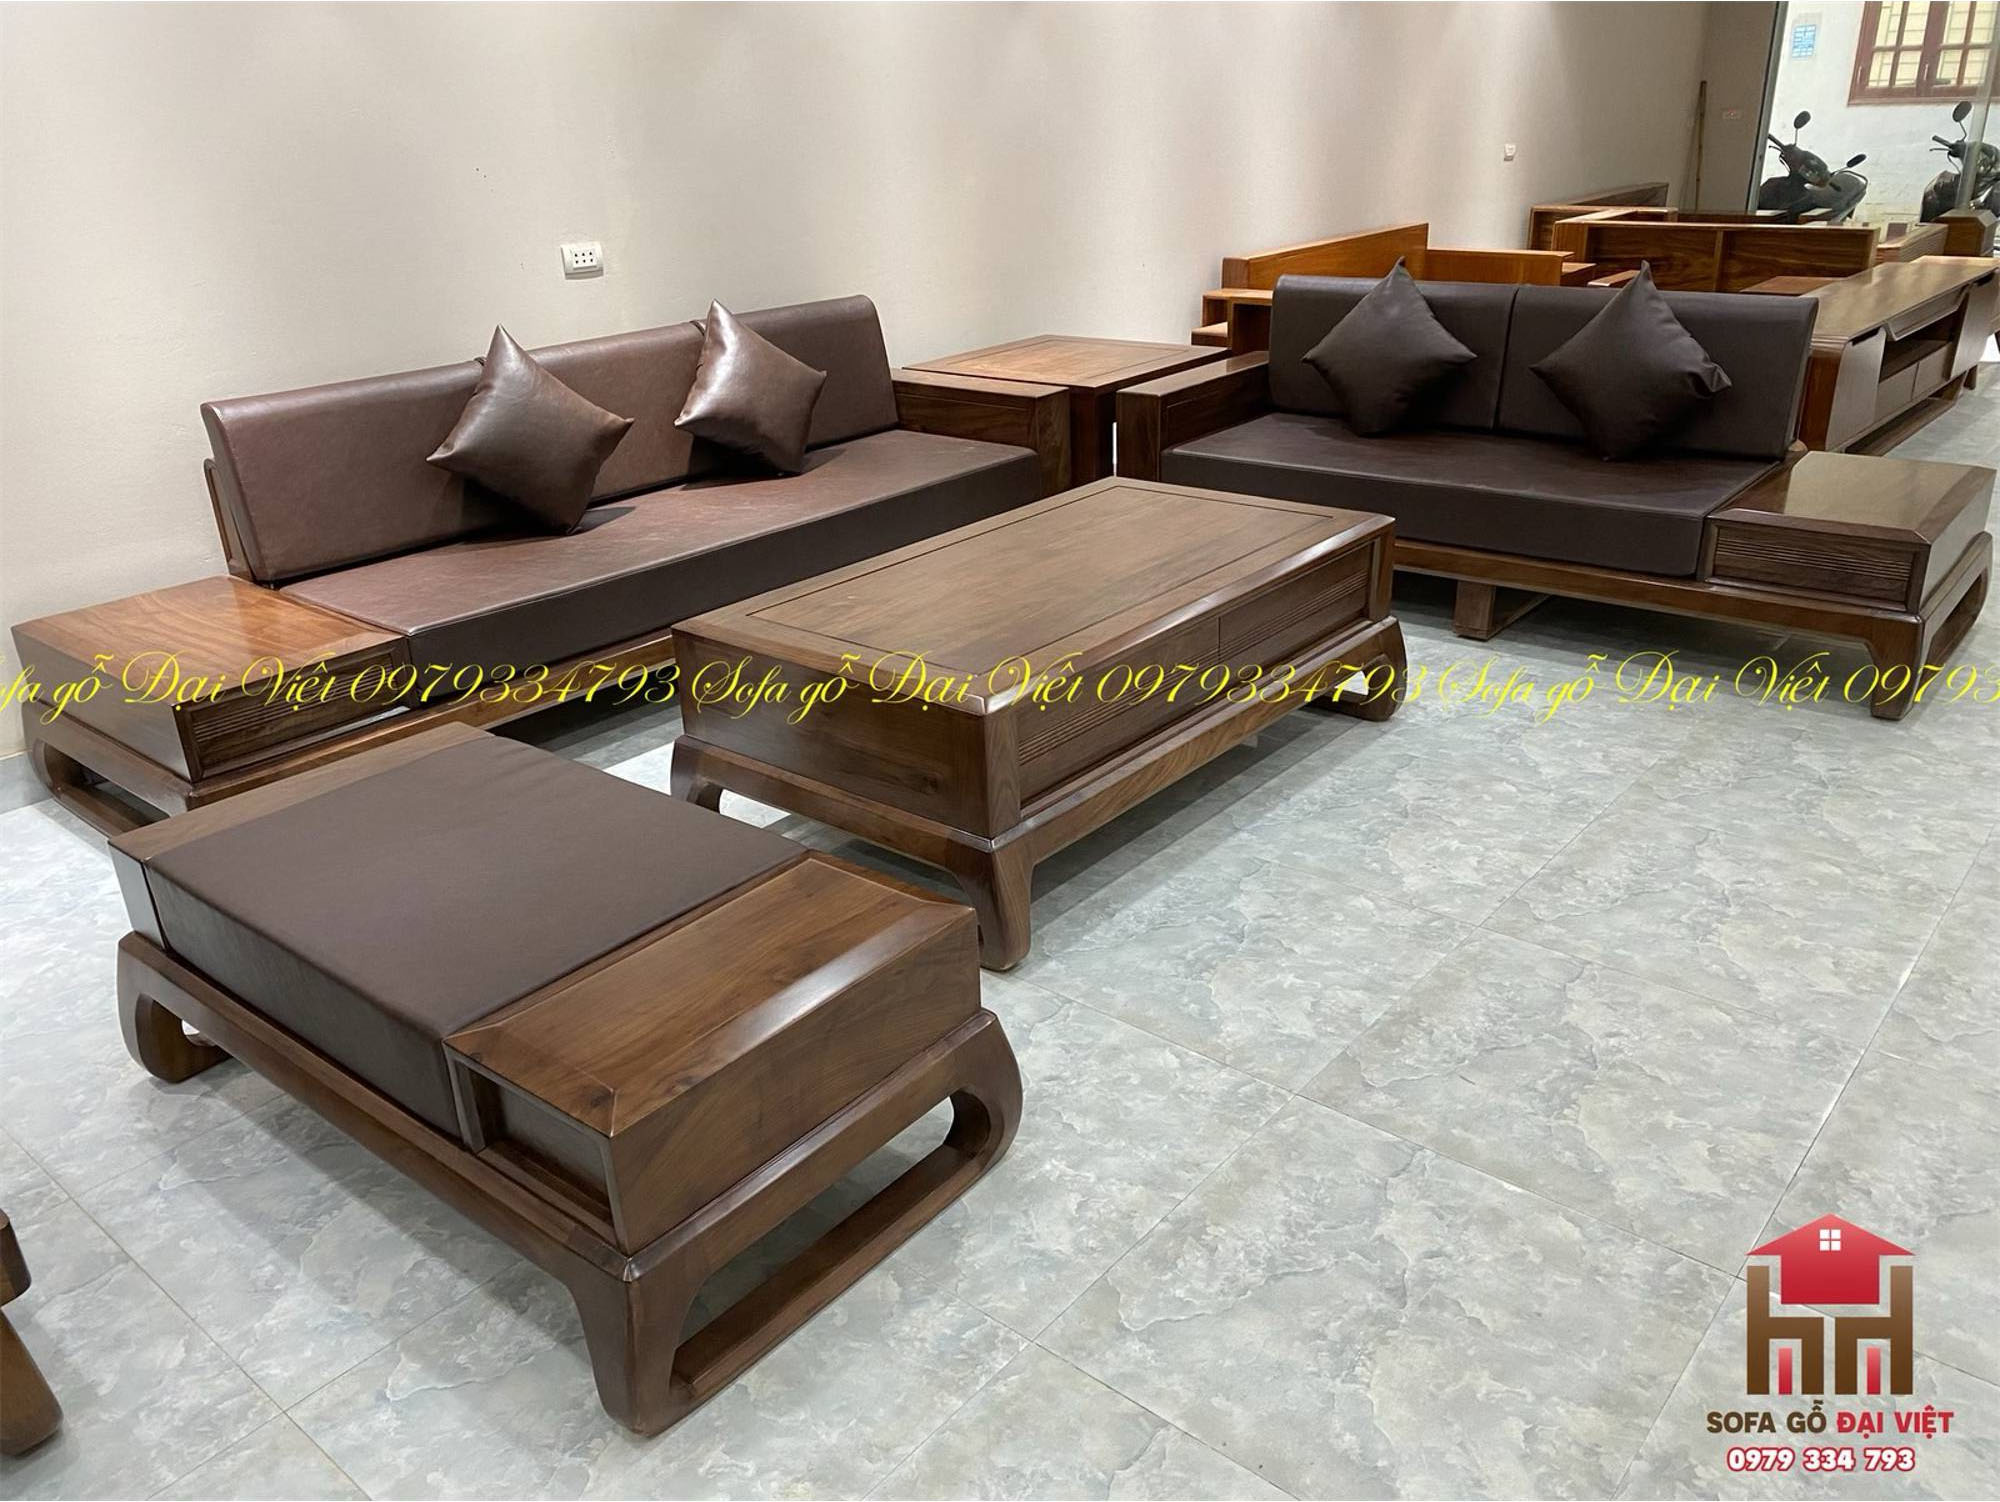 Sofa gỗ óc cho đẹp - So sánh gỗ sồi và gỗ óc chó